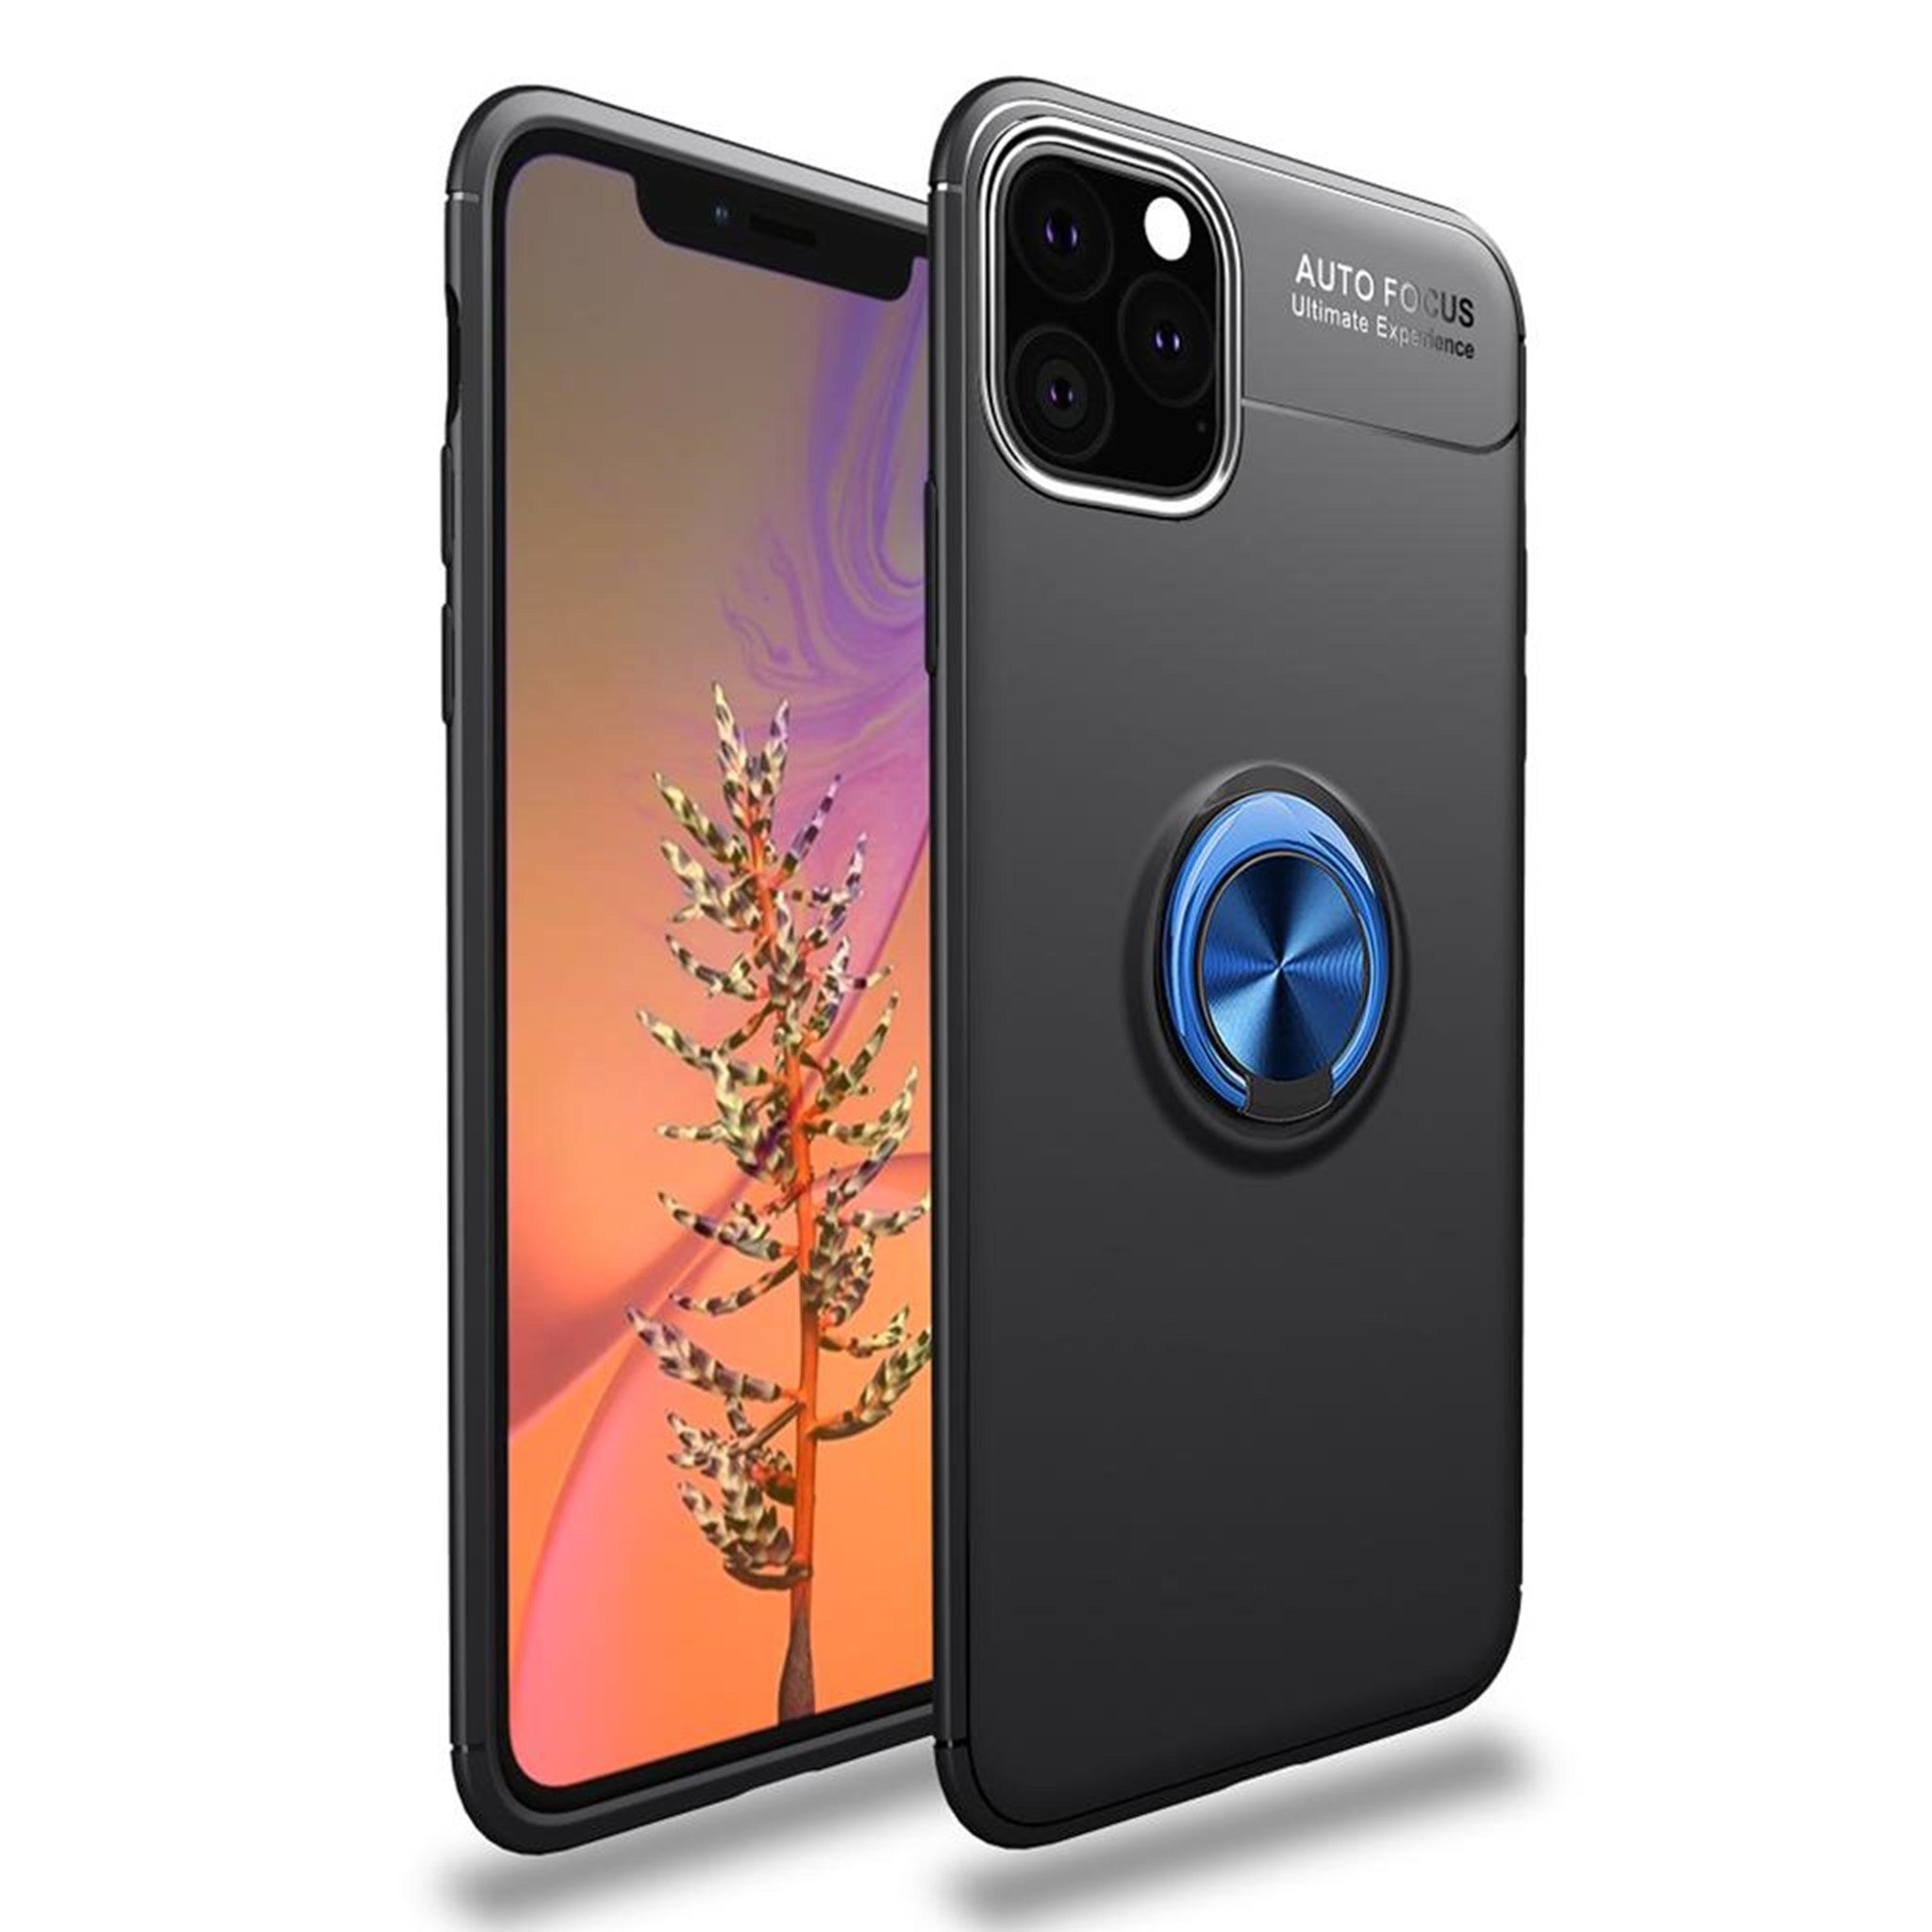 Ringo iPhone 11 case - Black / Blue